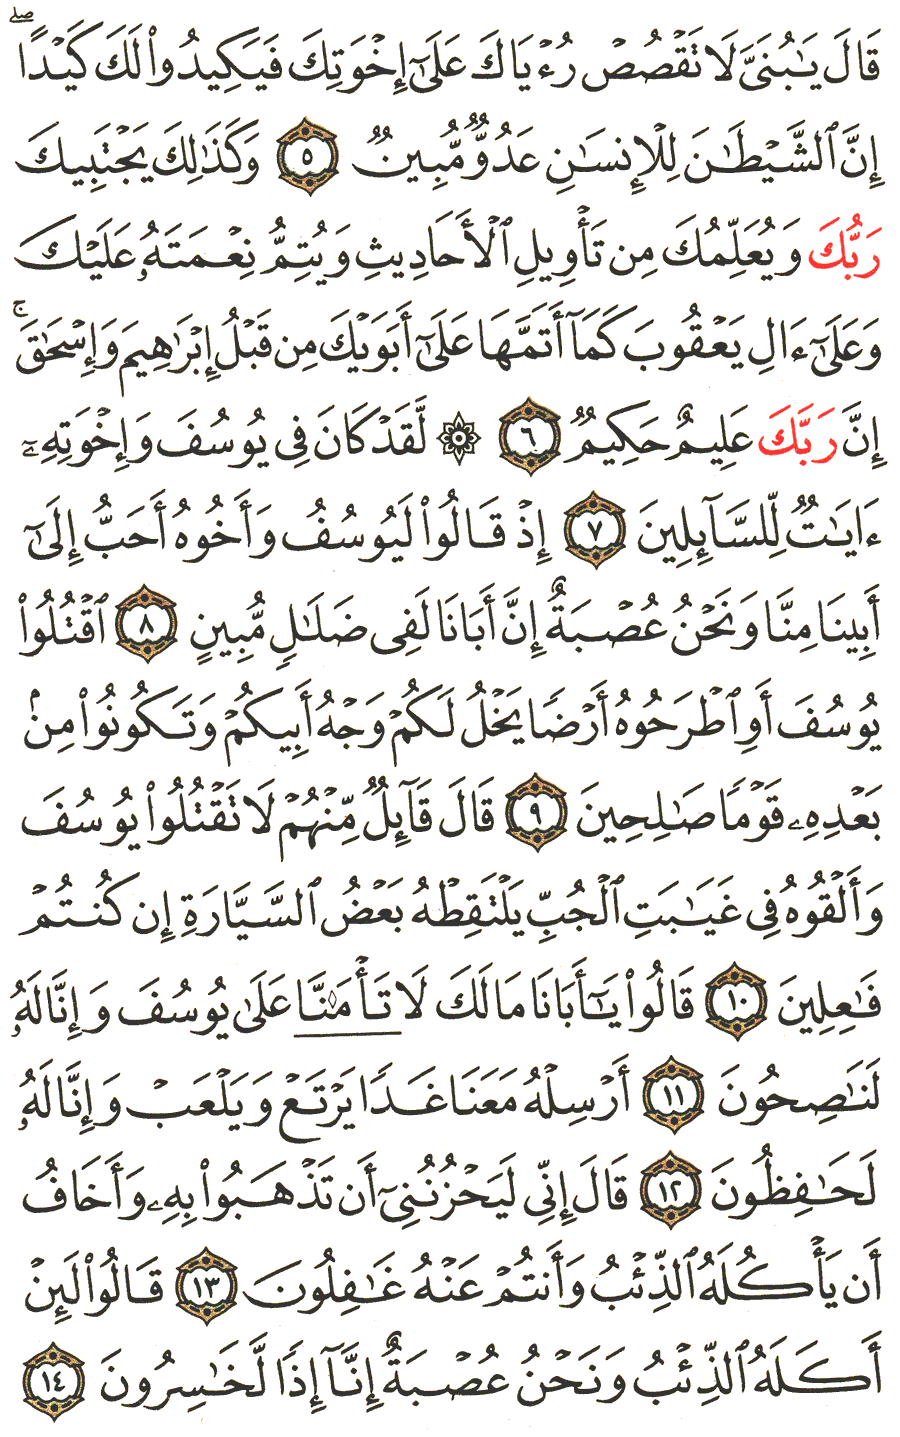 الصفحة رقم 236  من القرآن الكريم مكتوبة من المصحف